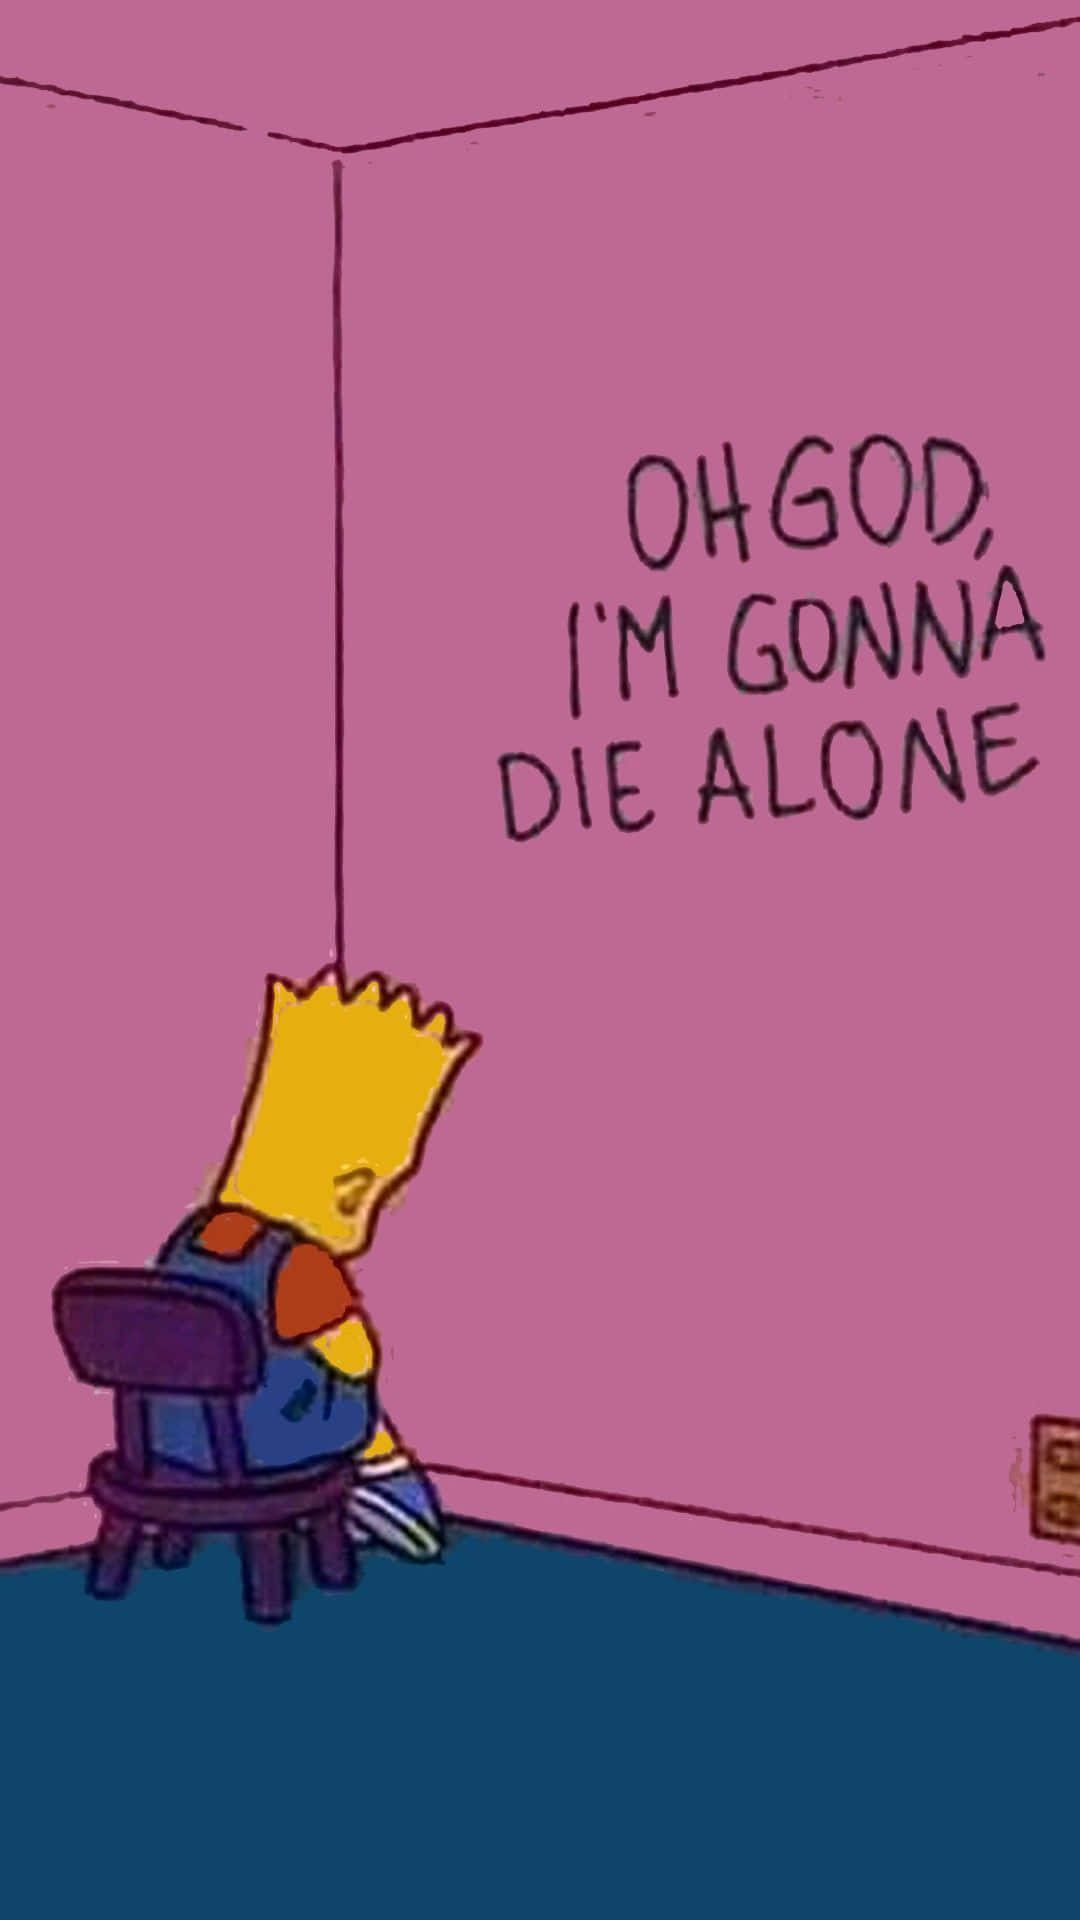 En tegnet personage fra Simpsons sidder i en stol med et skilt, der siger 